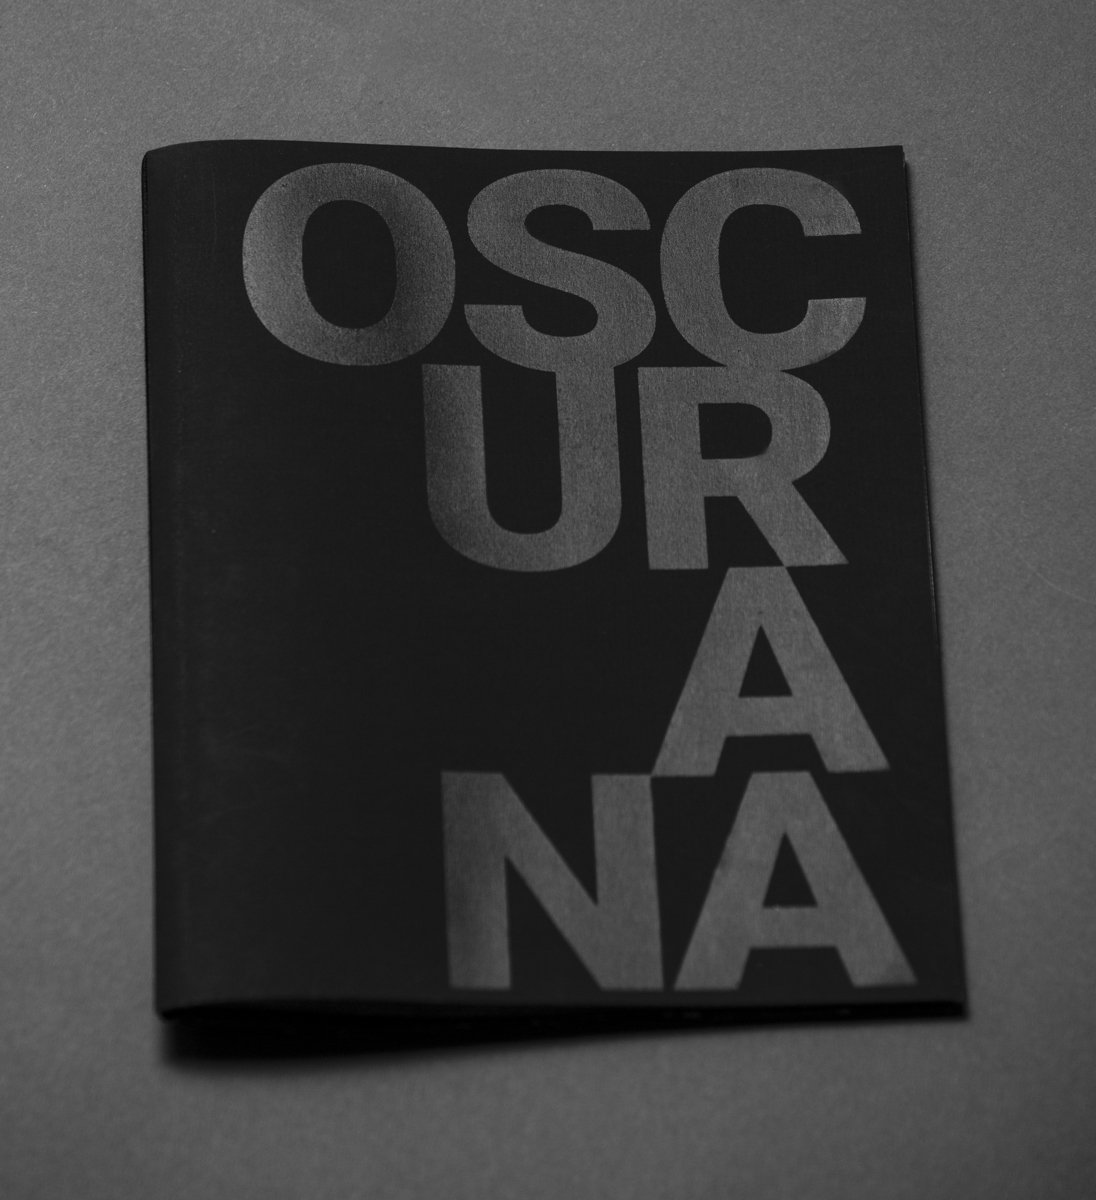 Oscurana by Sub, Editora